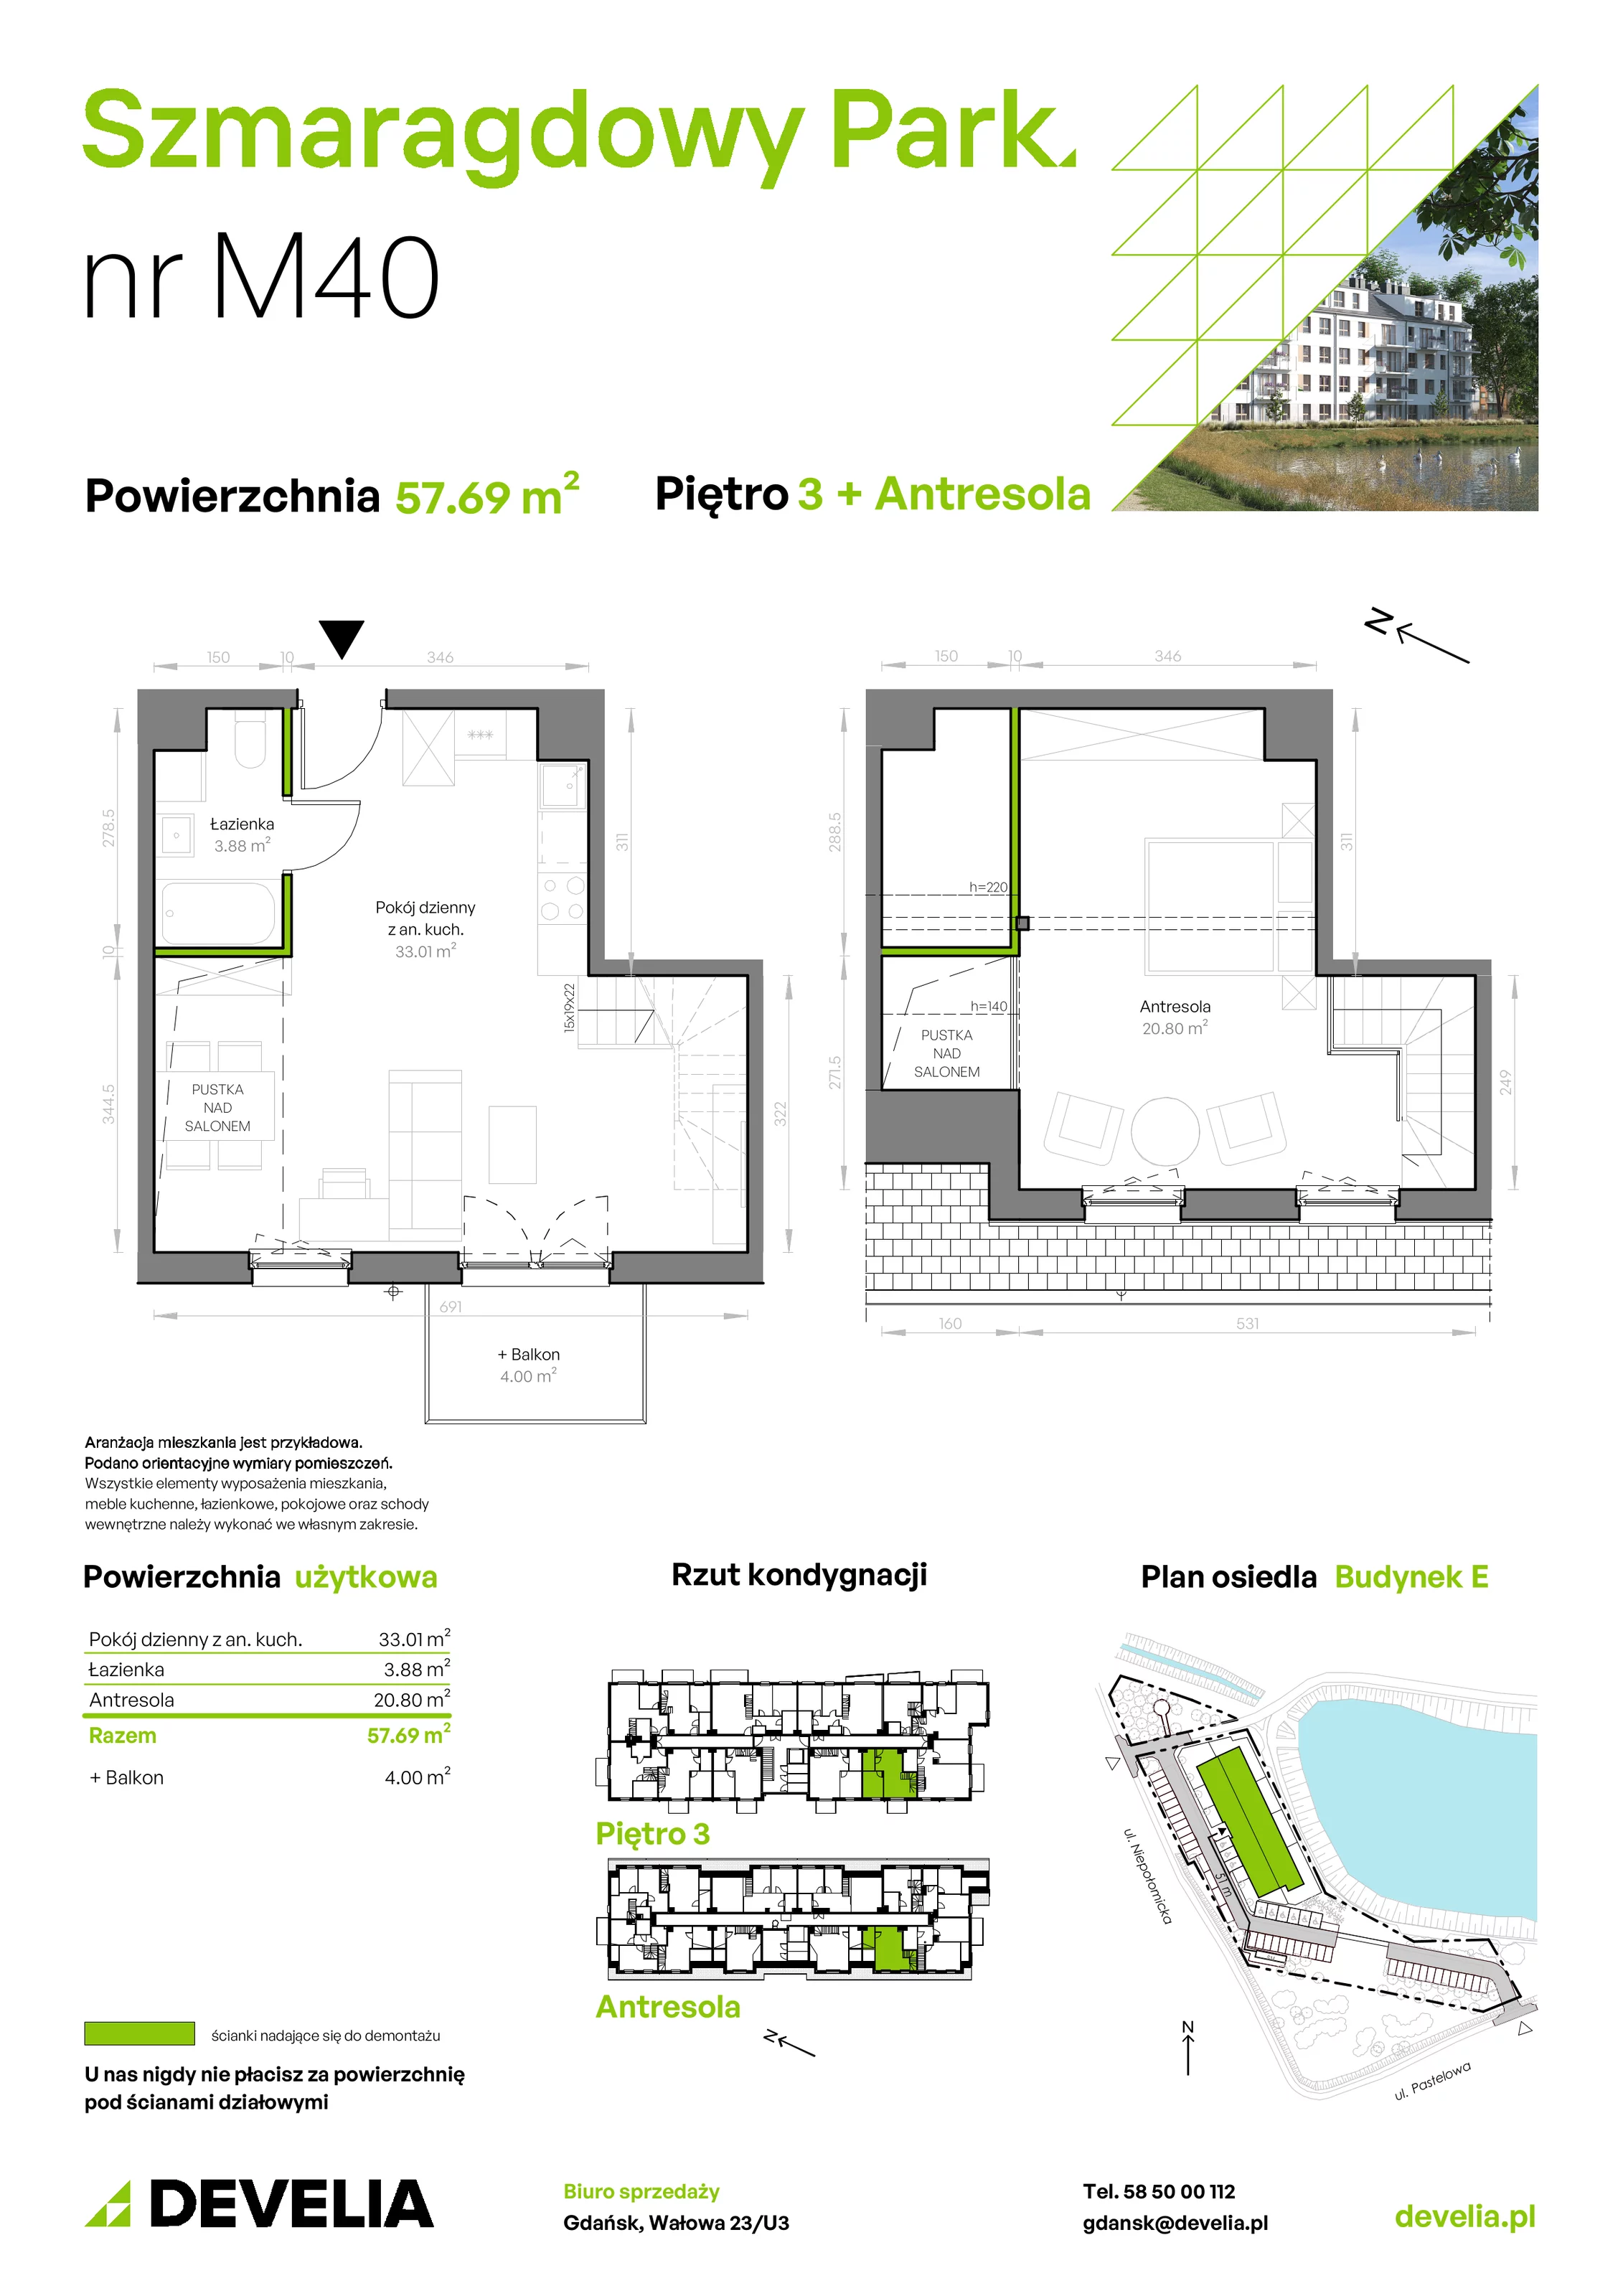 Mieszkanie 57,69 m², piętro 3, oferta nr E/040, Szmaragdowy Park, Gdańsk, Orunia Górna-Gdańsk Południe, Łostowice, ul. Topazowa 2